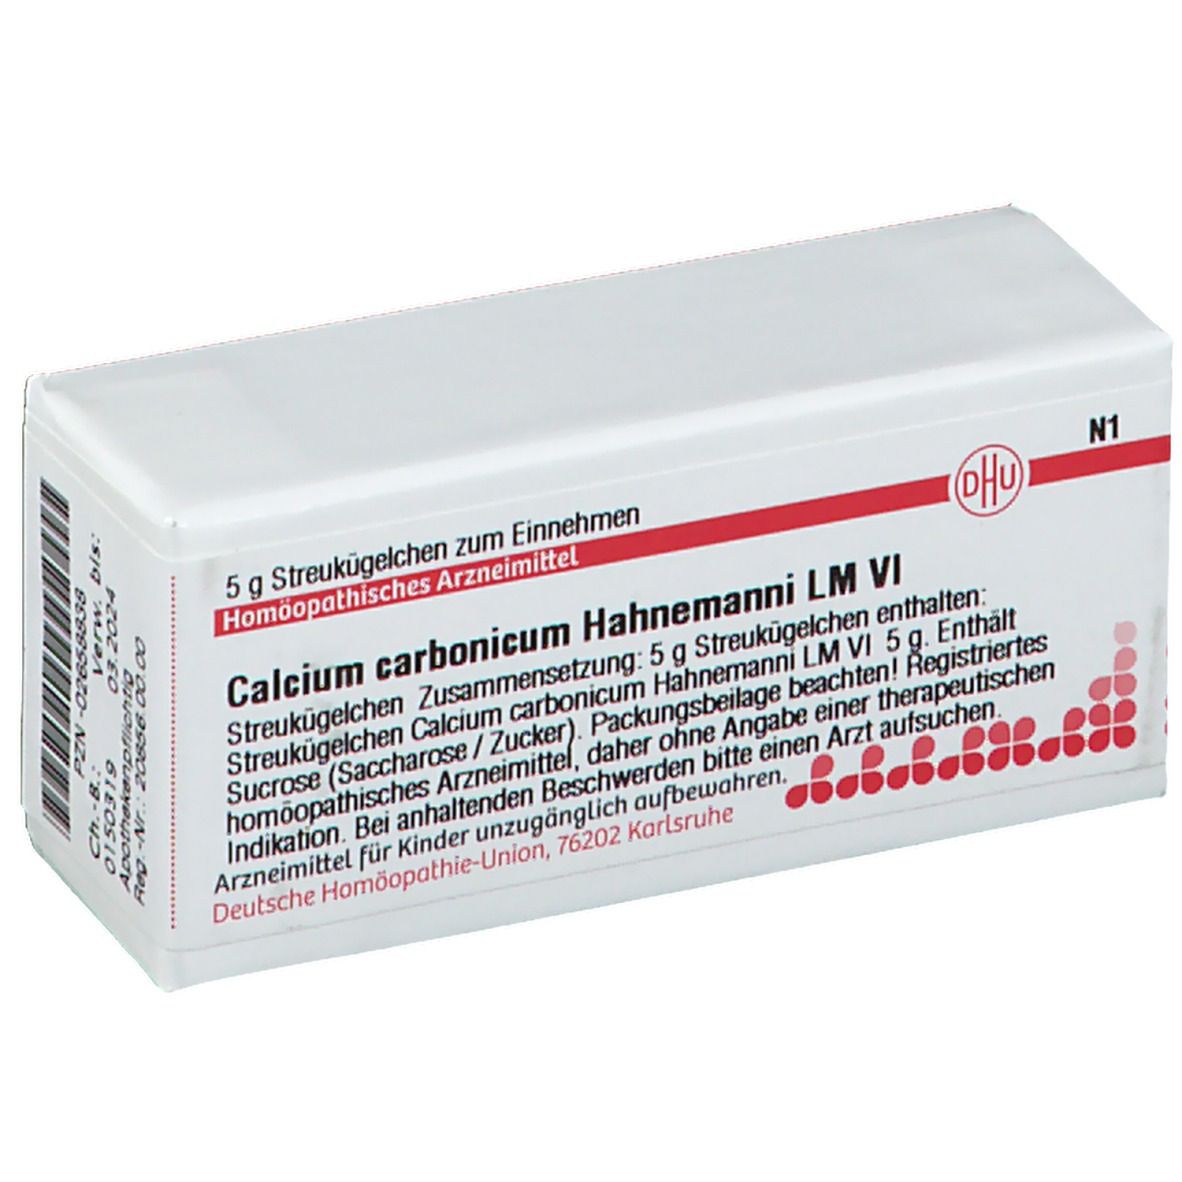 DHU Calcium Carbonicum Hahnemanni LM VI